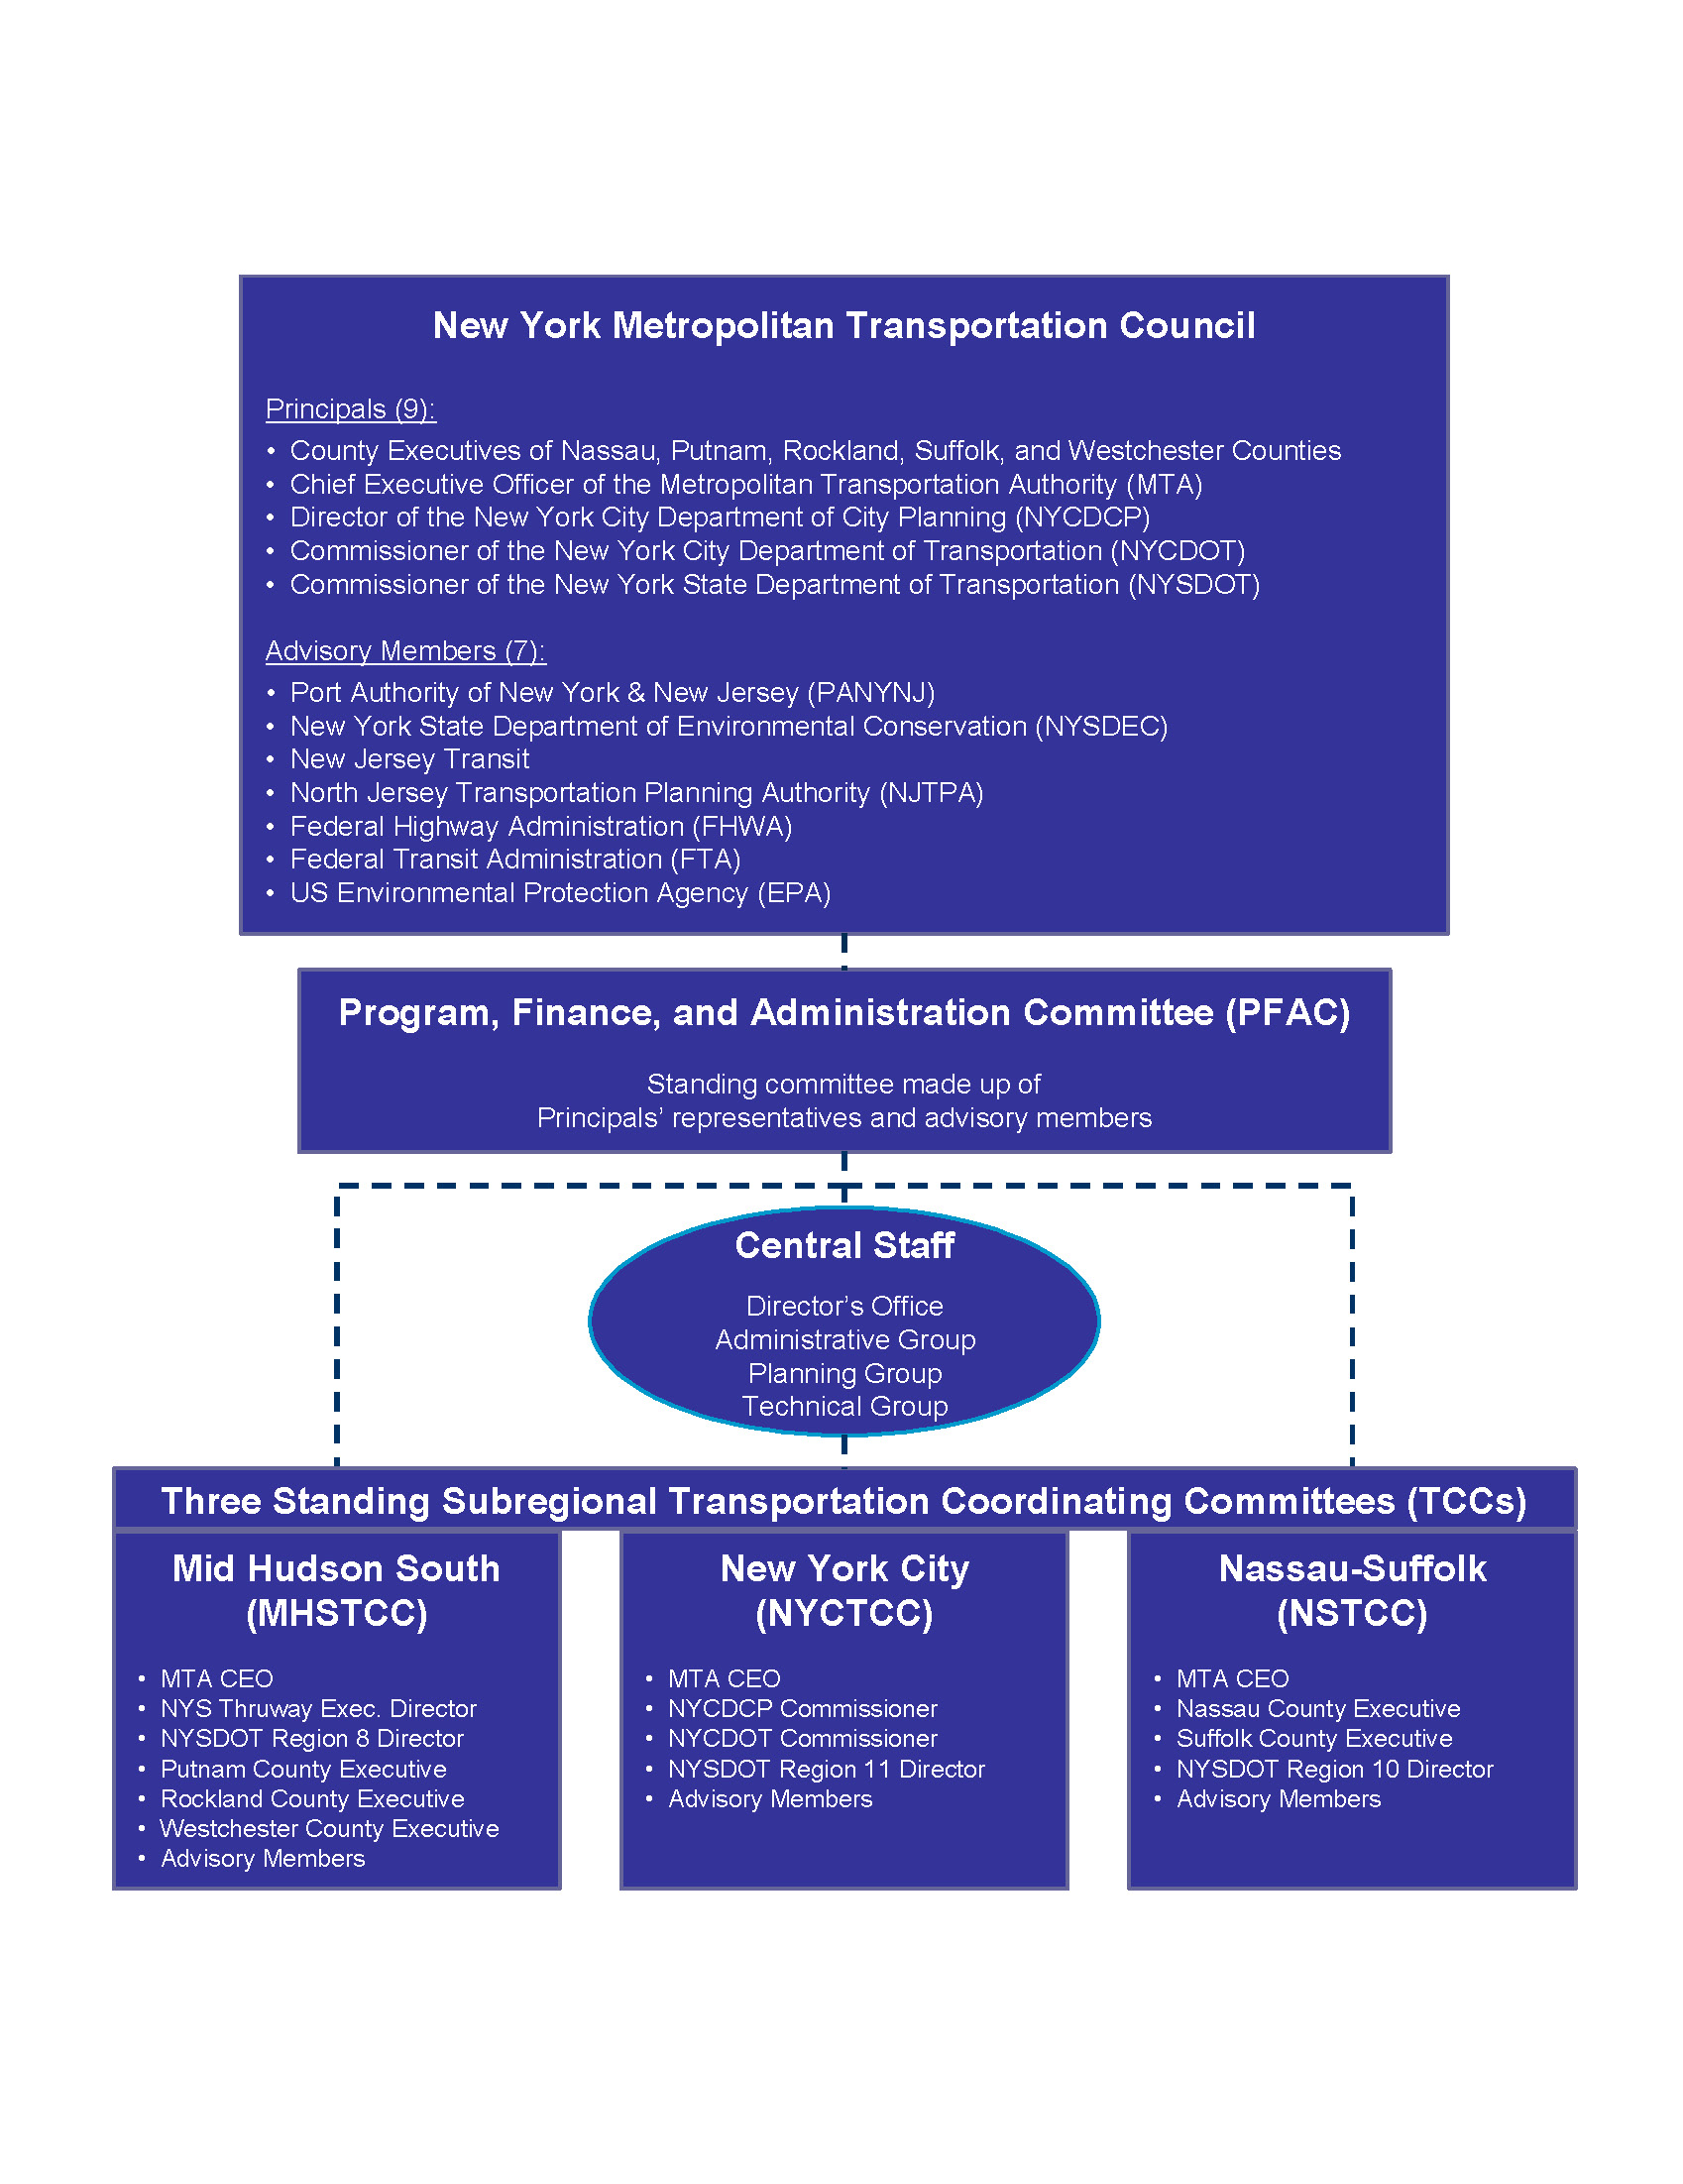 Organizational Chart Of Nymtc Image